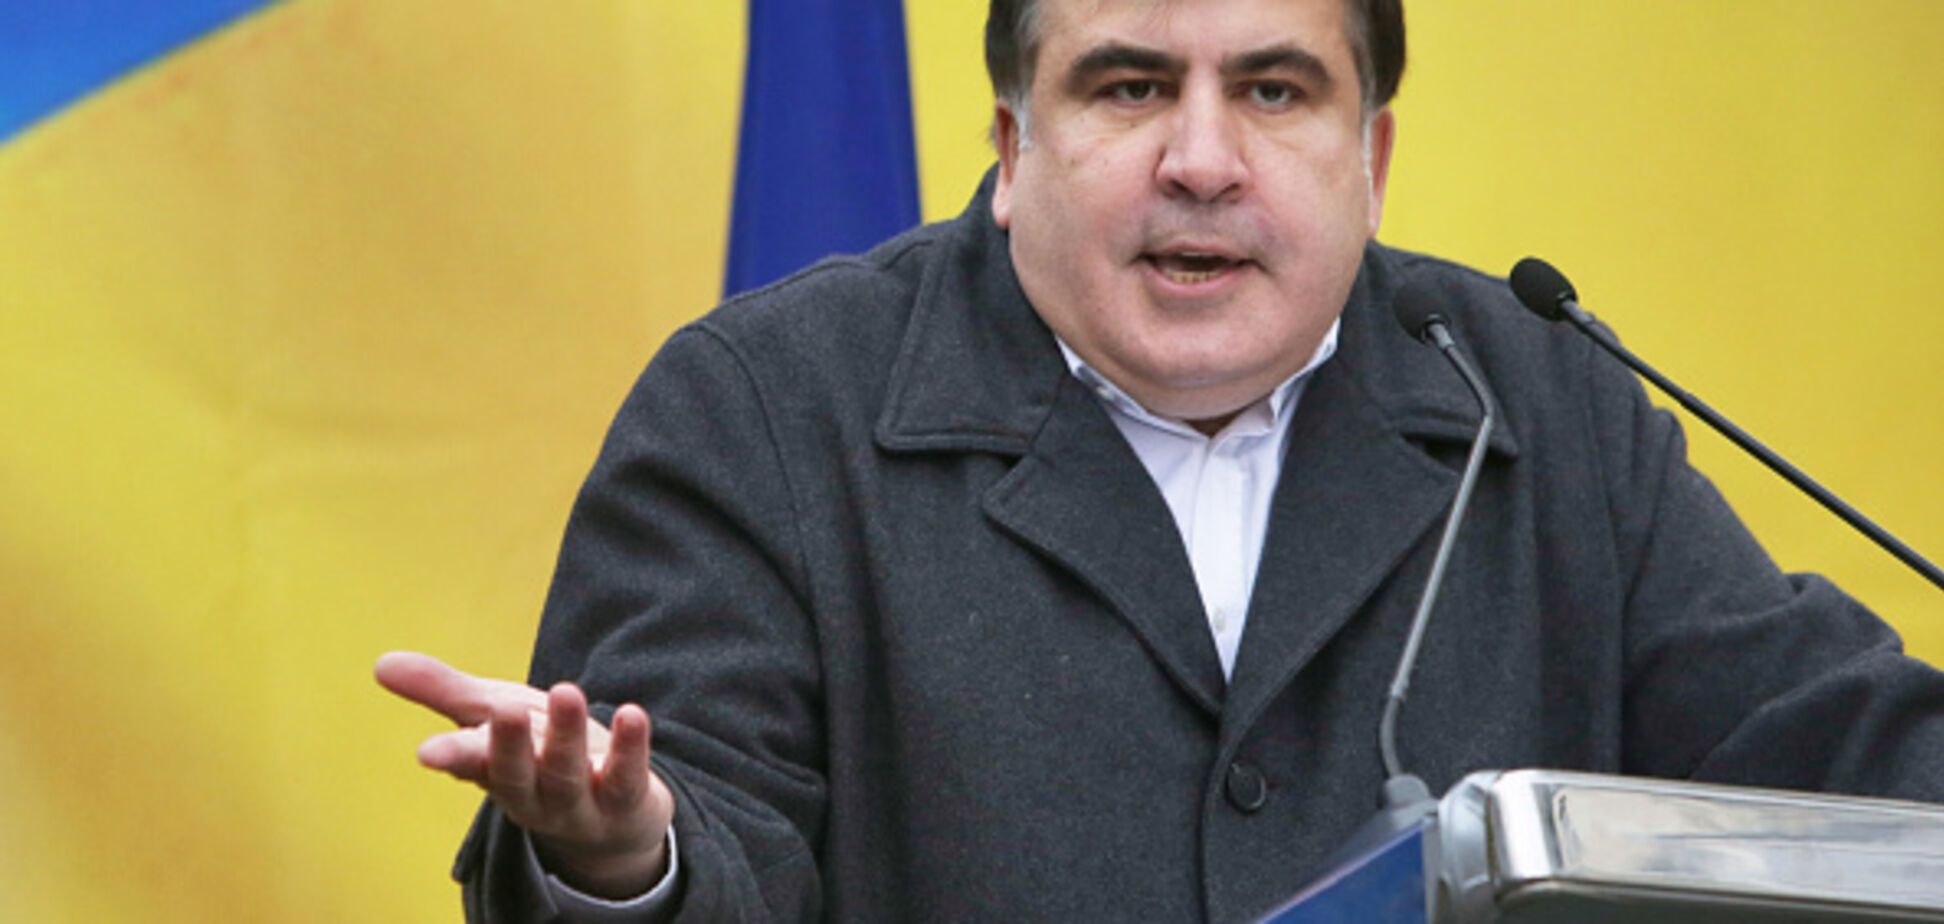 '$200 тыс. в месяц, чтобы не убили': появились новые коррупционные факты о Саакашвили